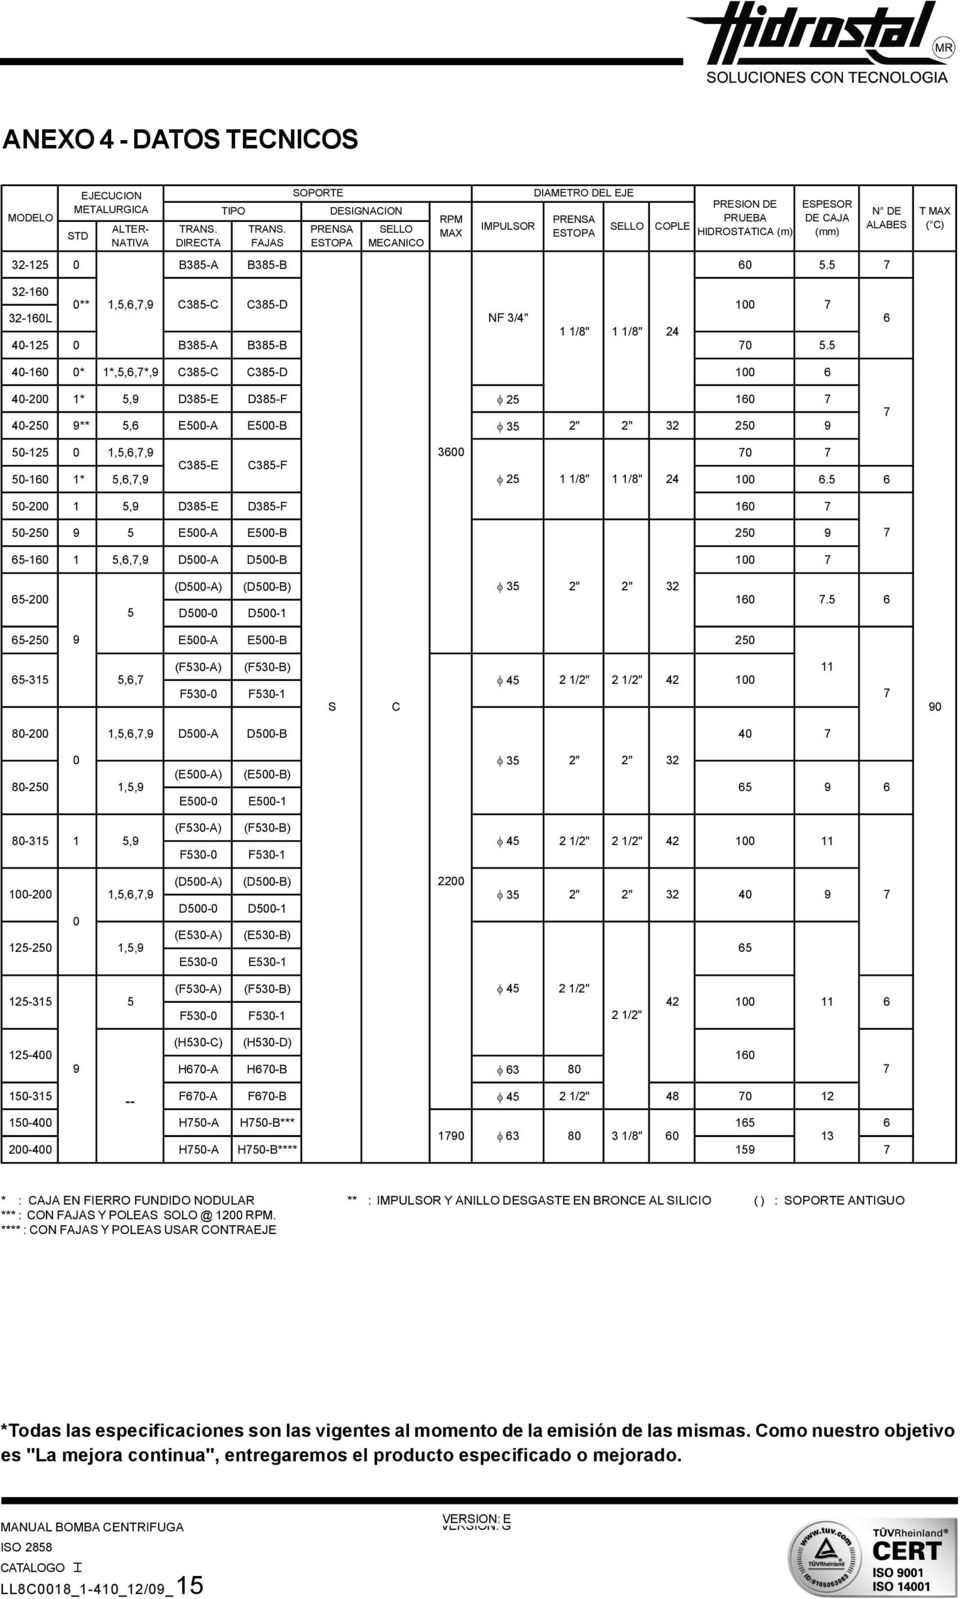 5 7 SELLO COPLE PRESION DE PRUEBA HIDROSTATICA (m) ESPESOR DE CAJA (mm) N DE ALABES T MAX ( C) 32-160 0** 1,5,6,7,9 C385-C C385-D 100 7 32-160L NF 3/4" 1 1/8" 1 1/8" 24 40-125 0 B385-A B385-B 70 5.